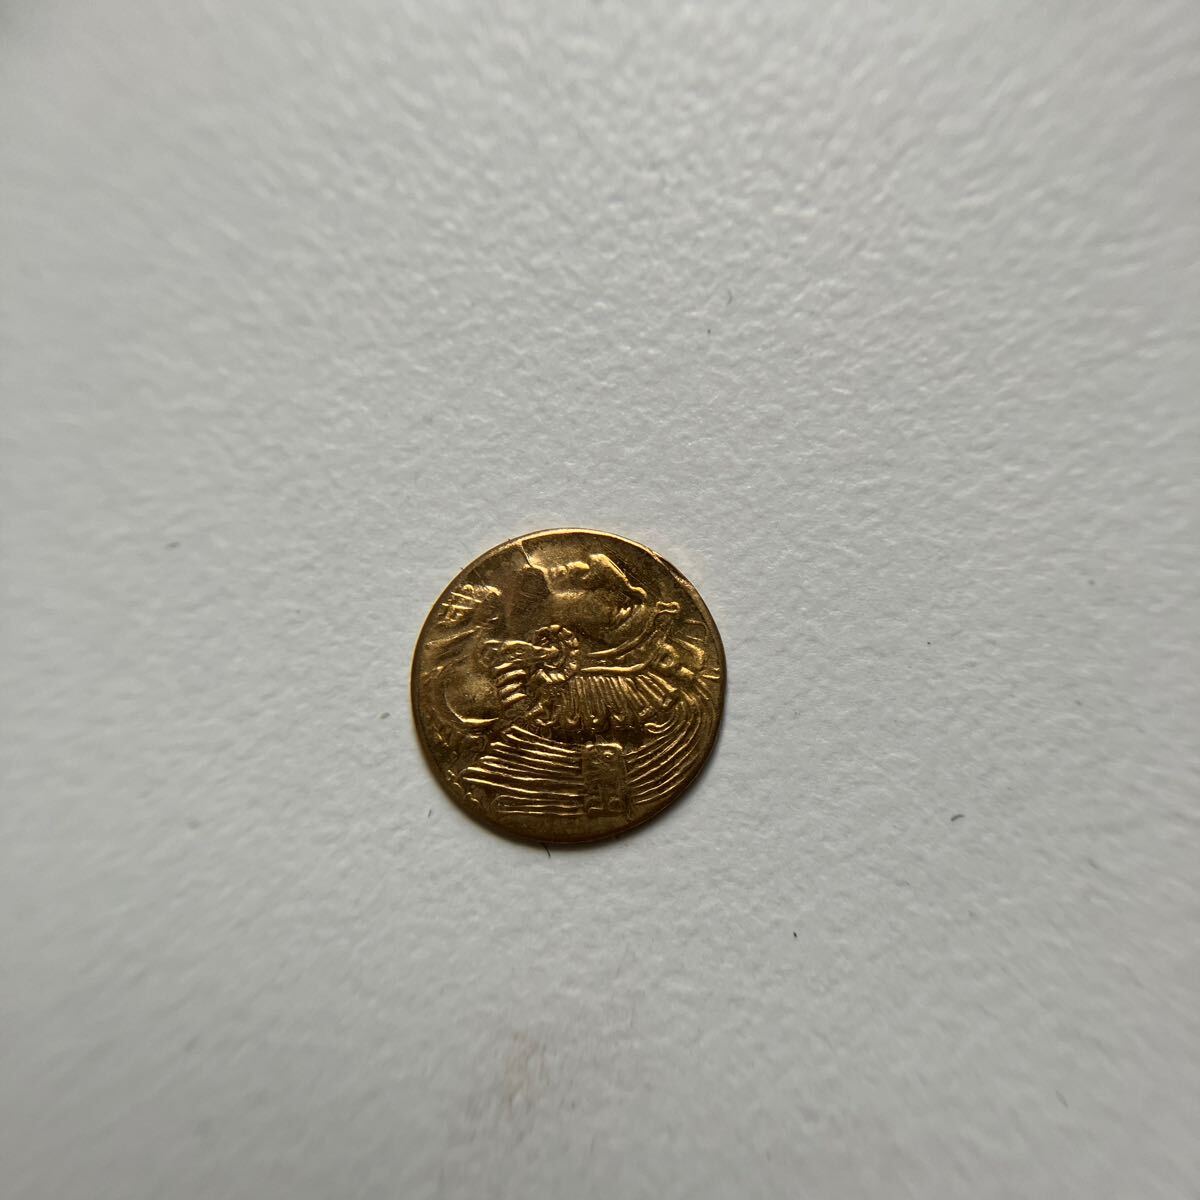  редкий! мир самый маленький золотая монета Mexico индеец монета коллекция античный *16